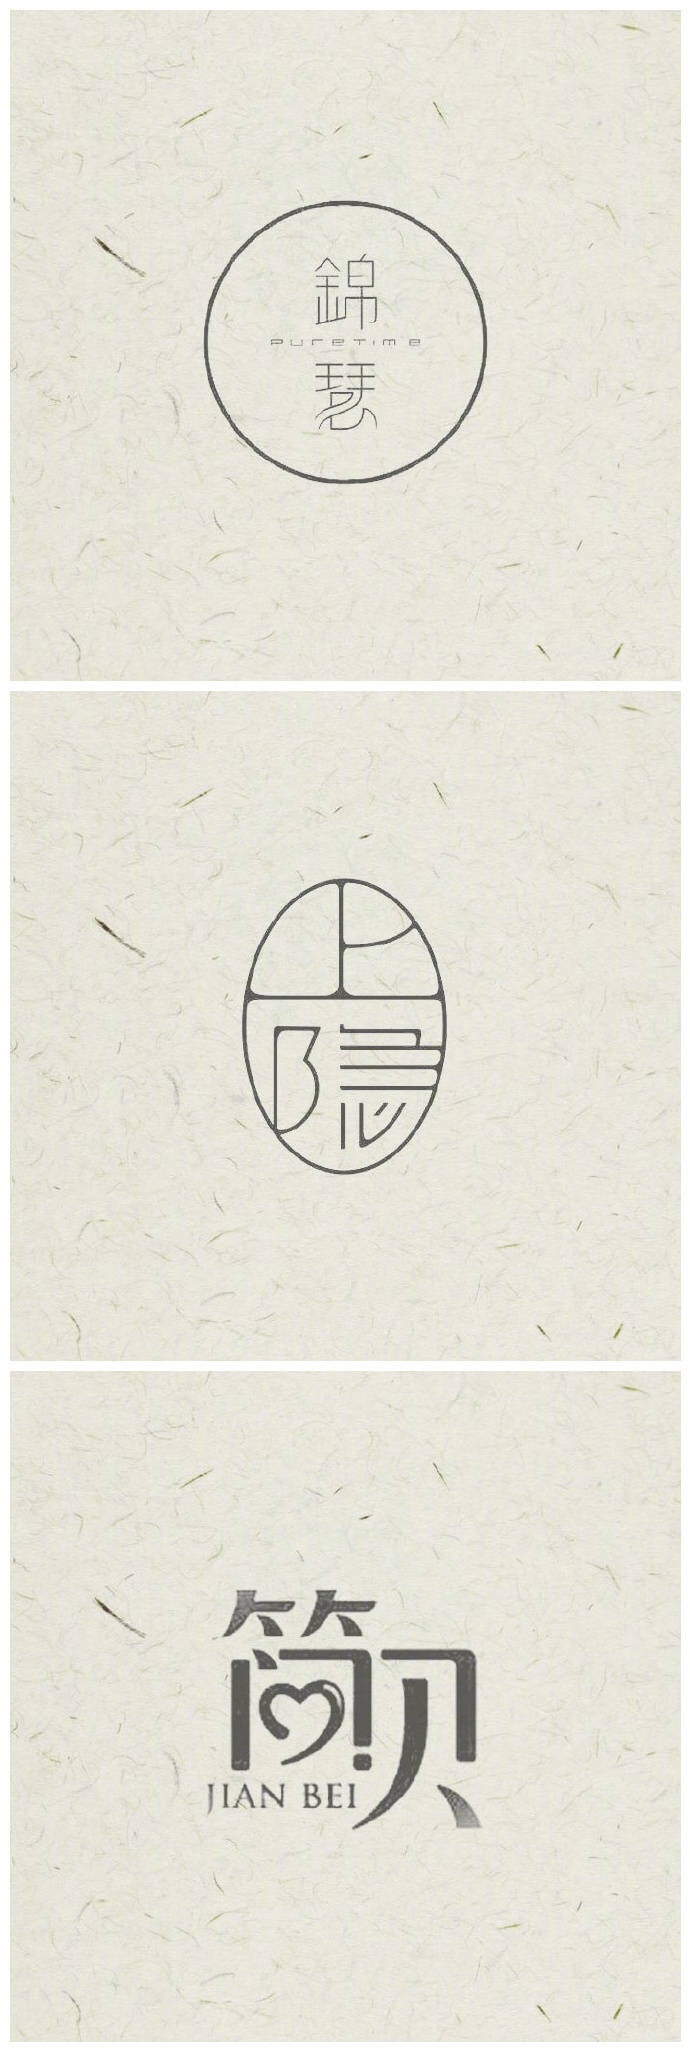 中国风字体logo设计,简单大气,韵味十足